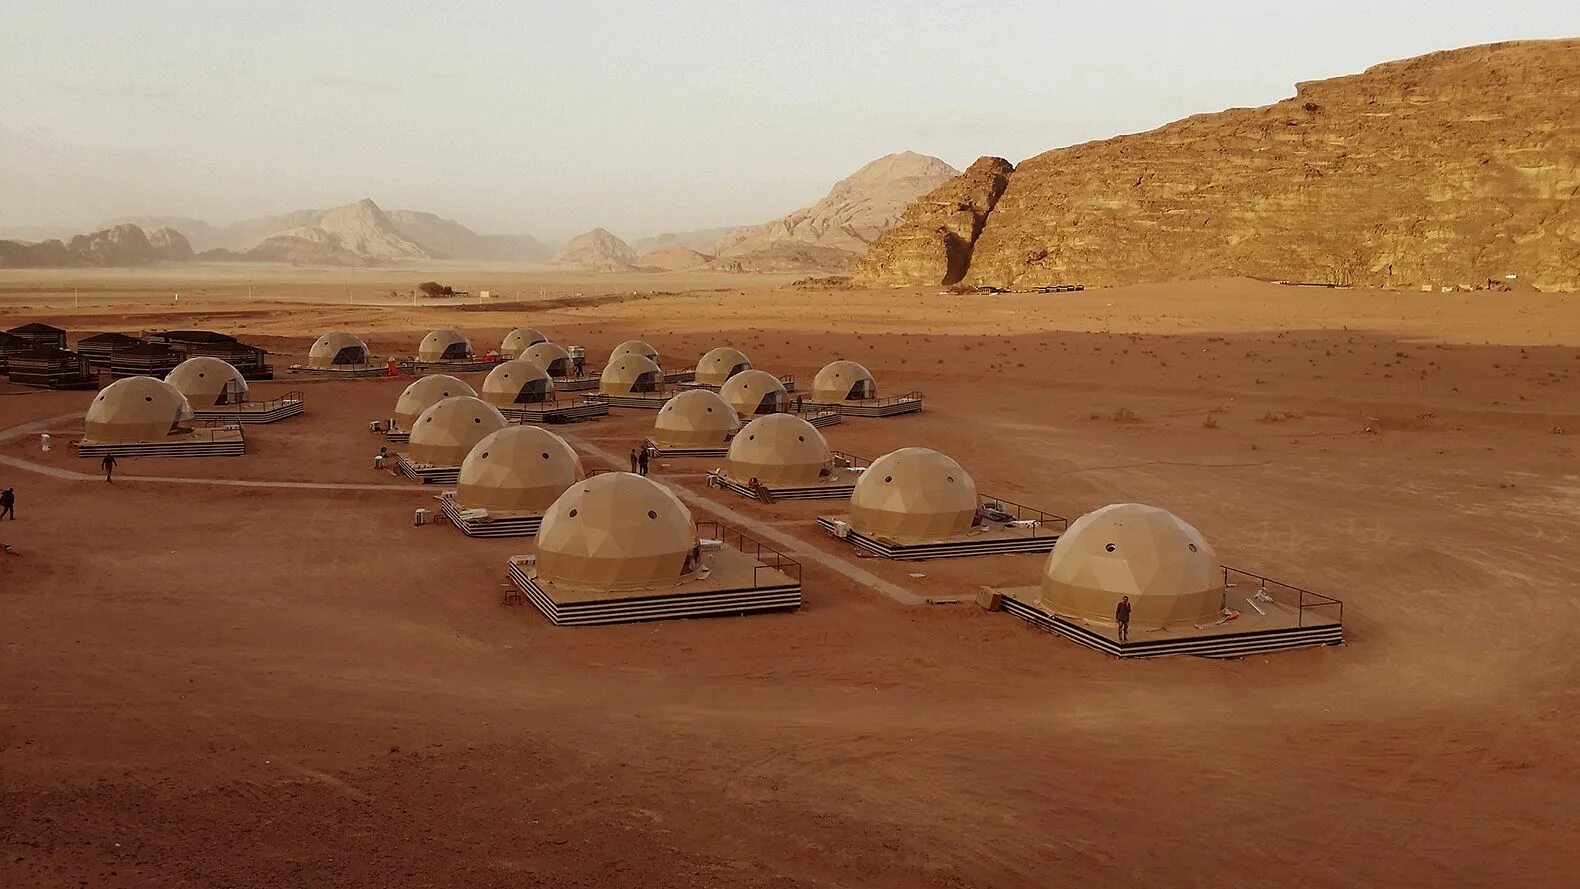 Марсианские контейнеры мир. Глэмпинг на Марсе. Купольный отель в пустыне Вади рам. Иордания пустыня Вади рам гостиница. Глэмпинг пустыня Вади рам.